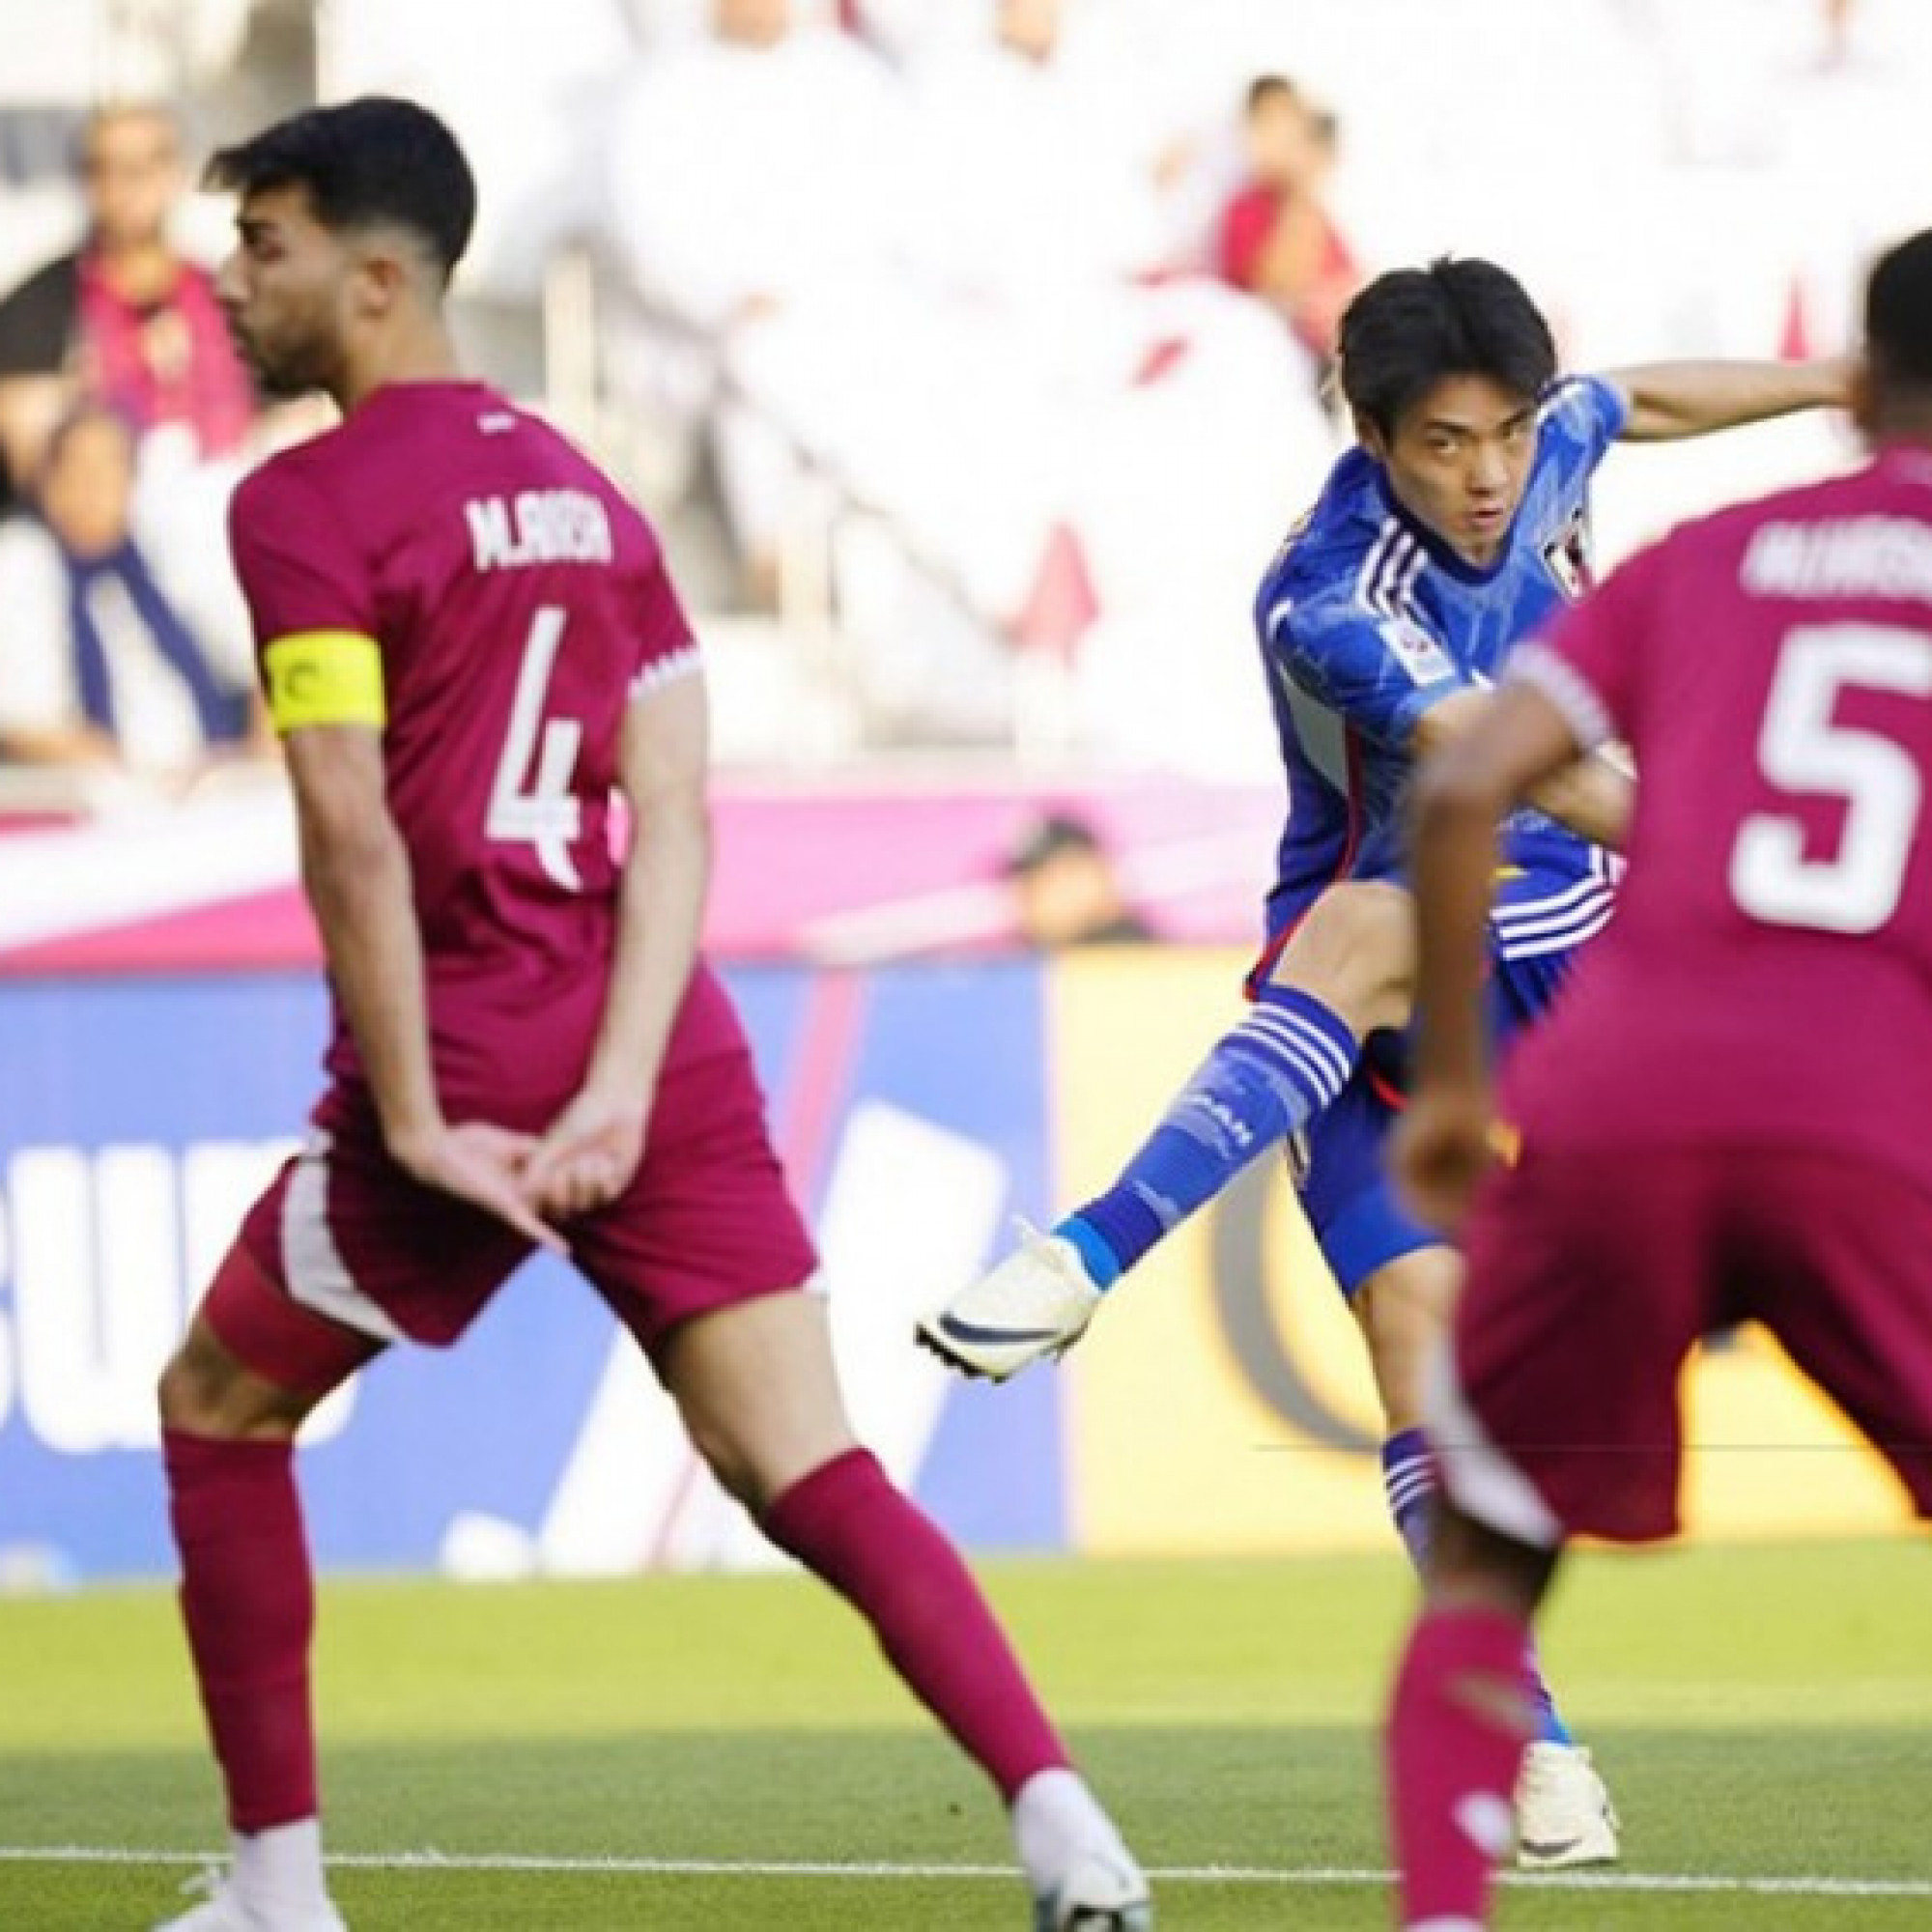  - Trực tiếp bóng đá U23 Qatar - U23 Nhật Bản: Dập tắt hy vọng chủ nhà (U23 châu Á) (Hết giờ)